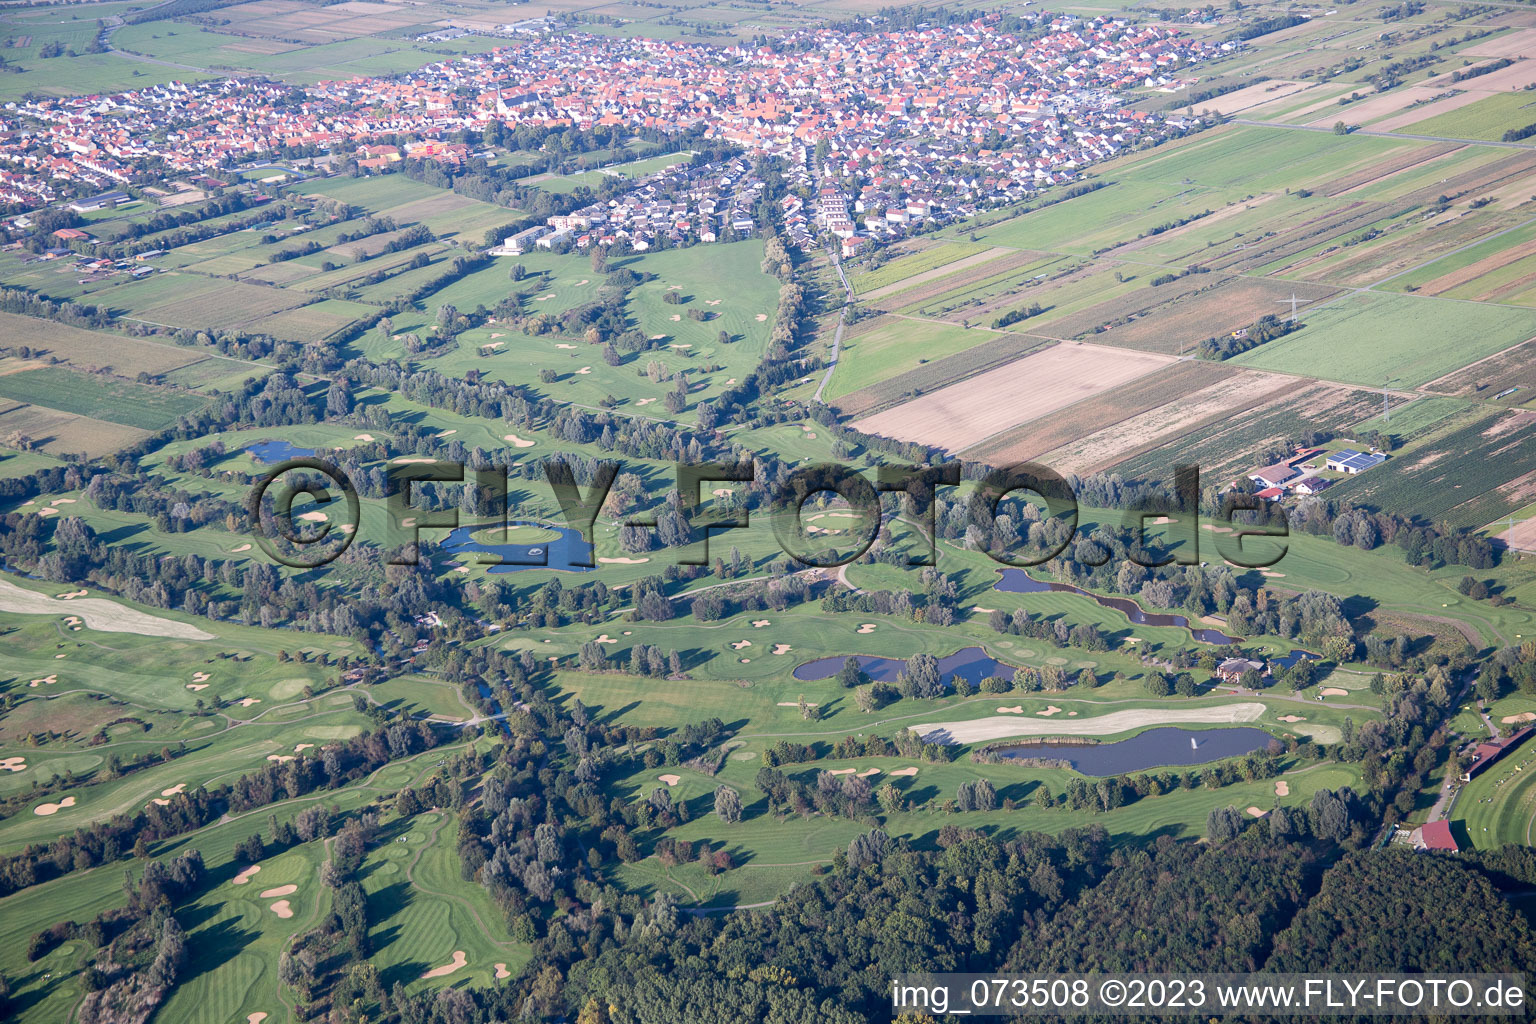 Photographie aérienne de Club de golf à Lußhardtsee à le quartier Rot in St. Leon-Rot dans le département Bade-Wurtemberg, Allemagne